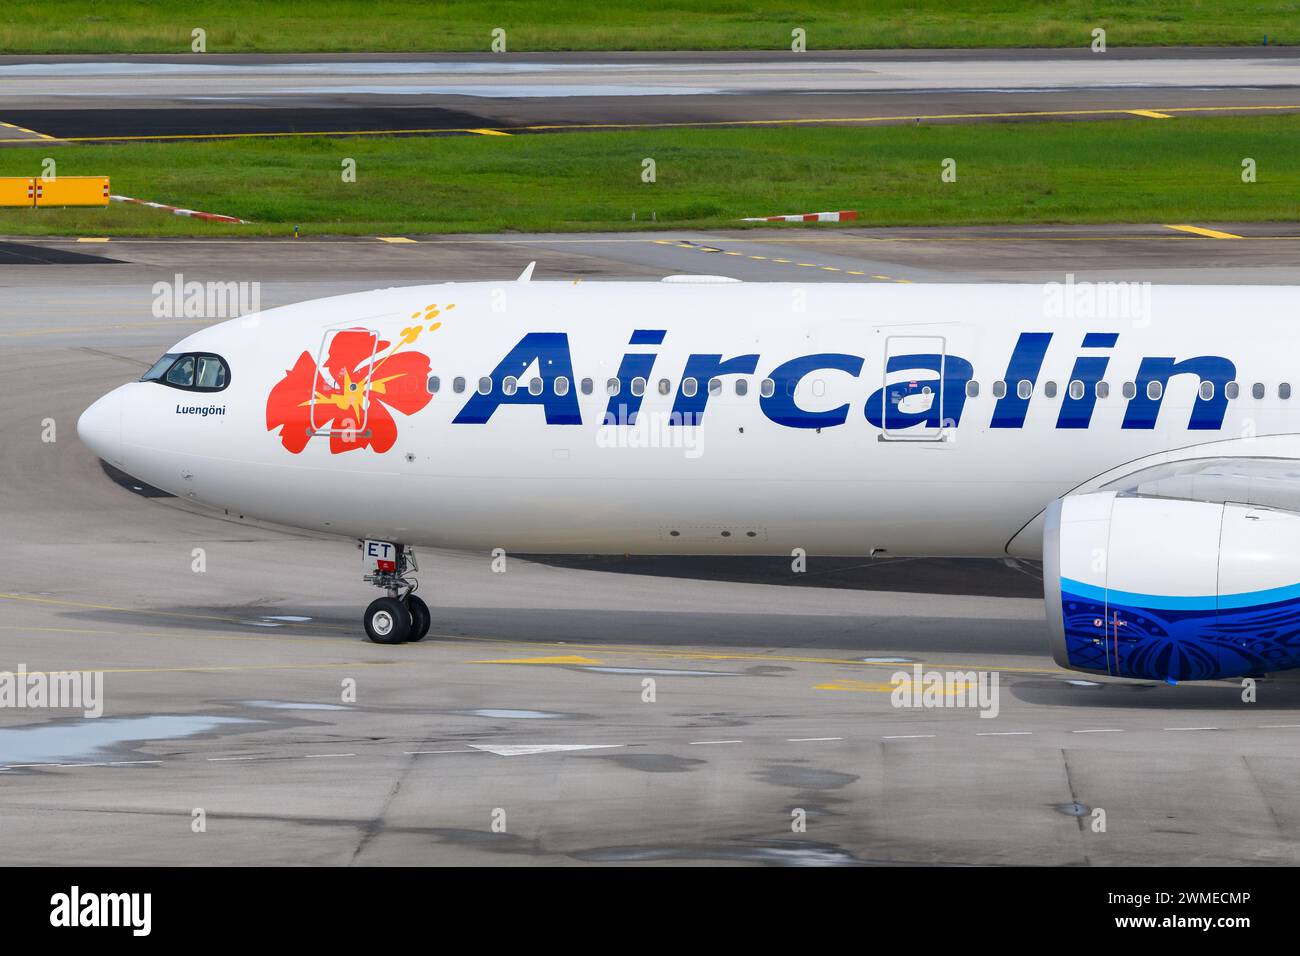 Aircalin Airbus A330 im Rollverkehr. Flugzeug A330neo von AirCalin. Flugzeug der Flaggengesellschaft von Neukaledonien bekannt als Air Calin oder Air Caledonie. Stockfoto